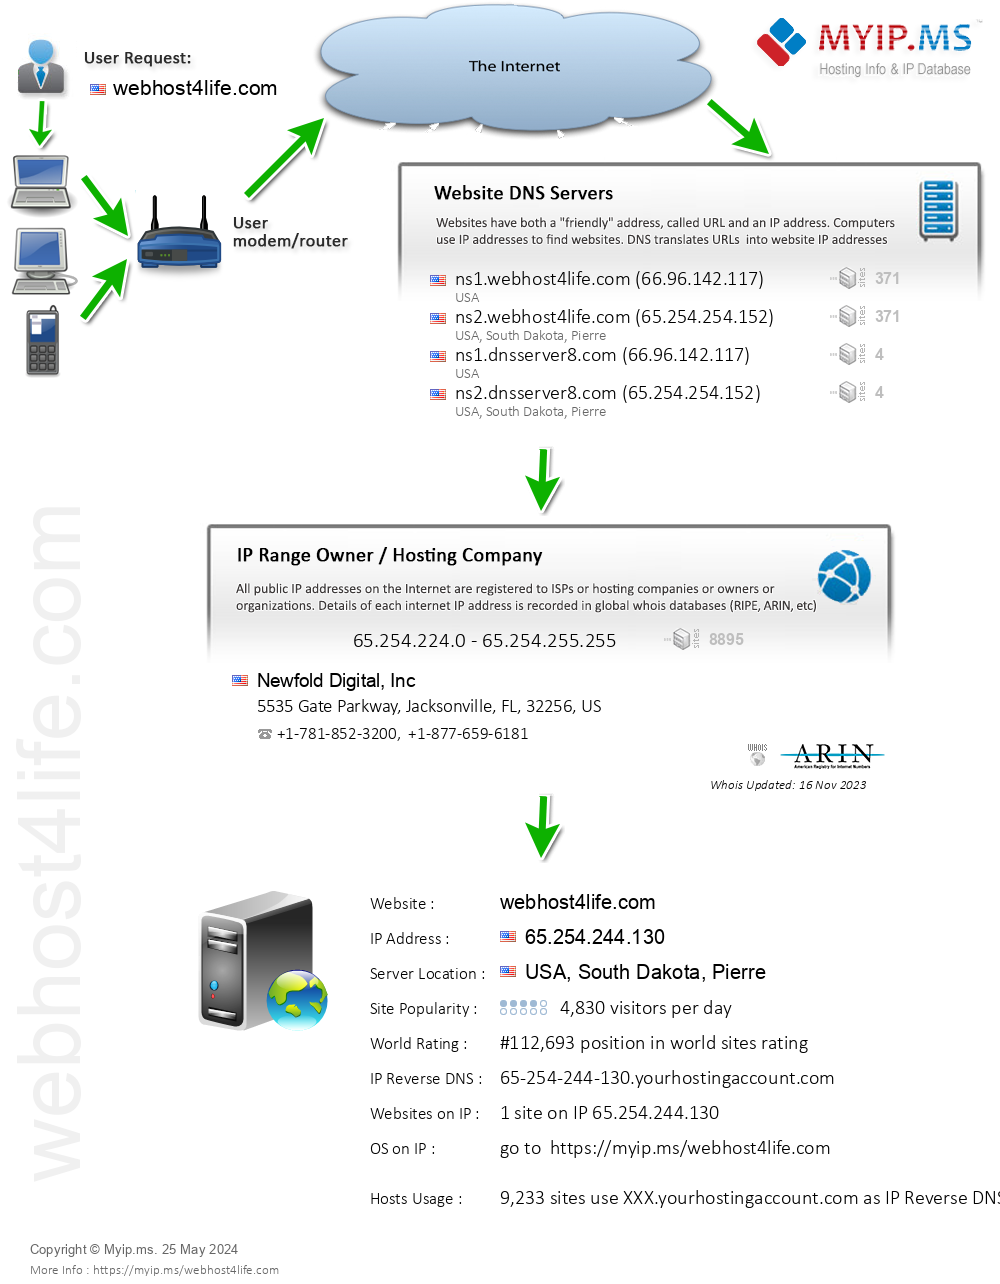 Webhost4life.com - Website Hosting Visual IP Diagram